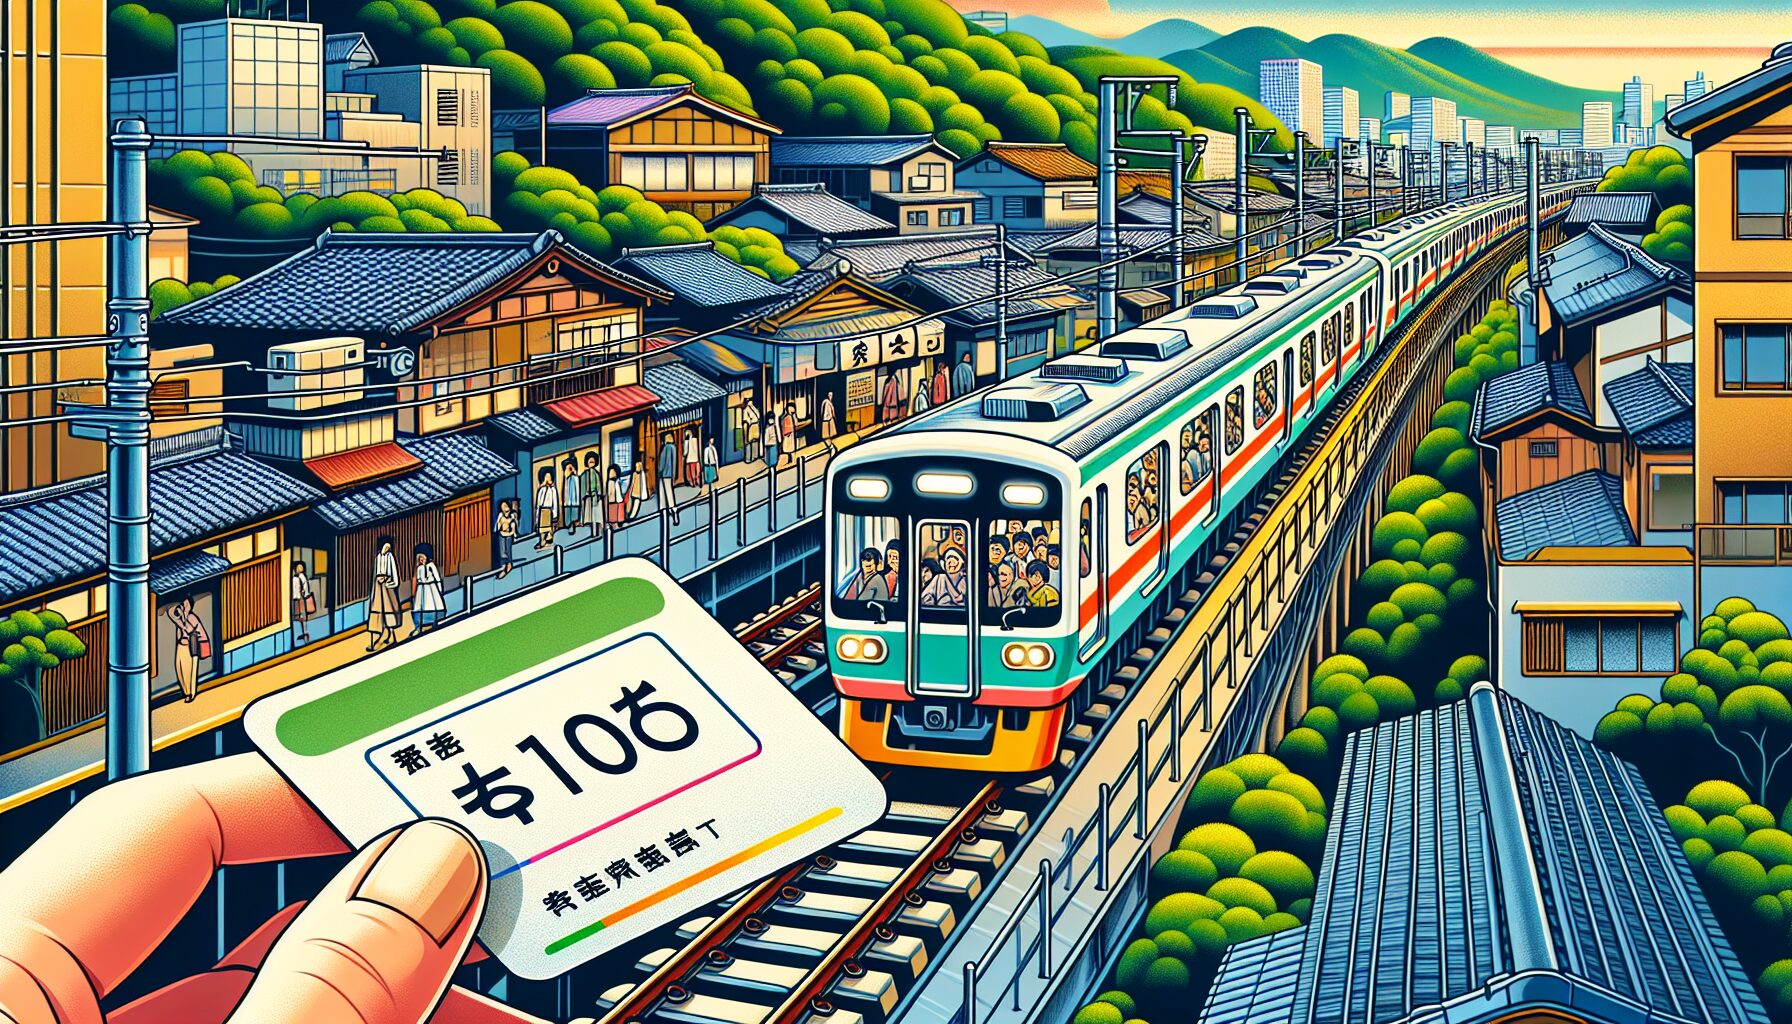 切符　電車　日本 image 4